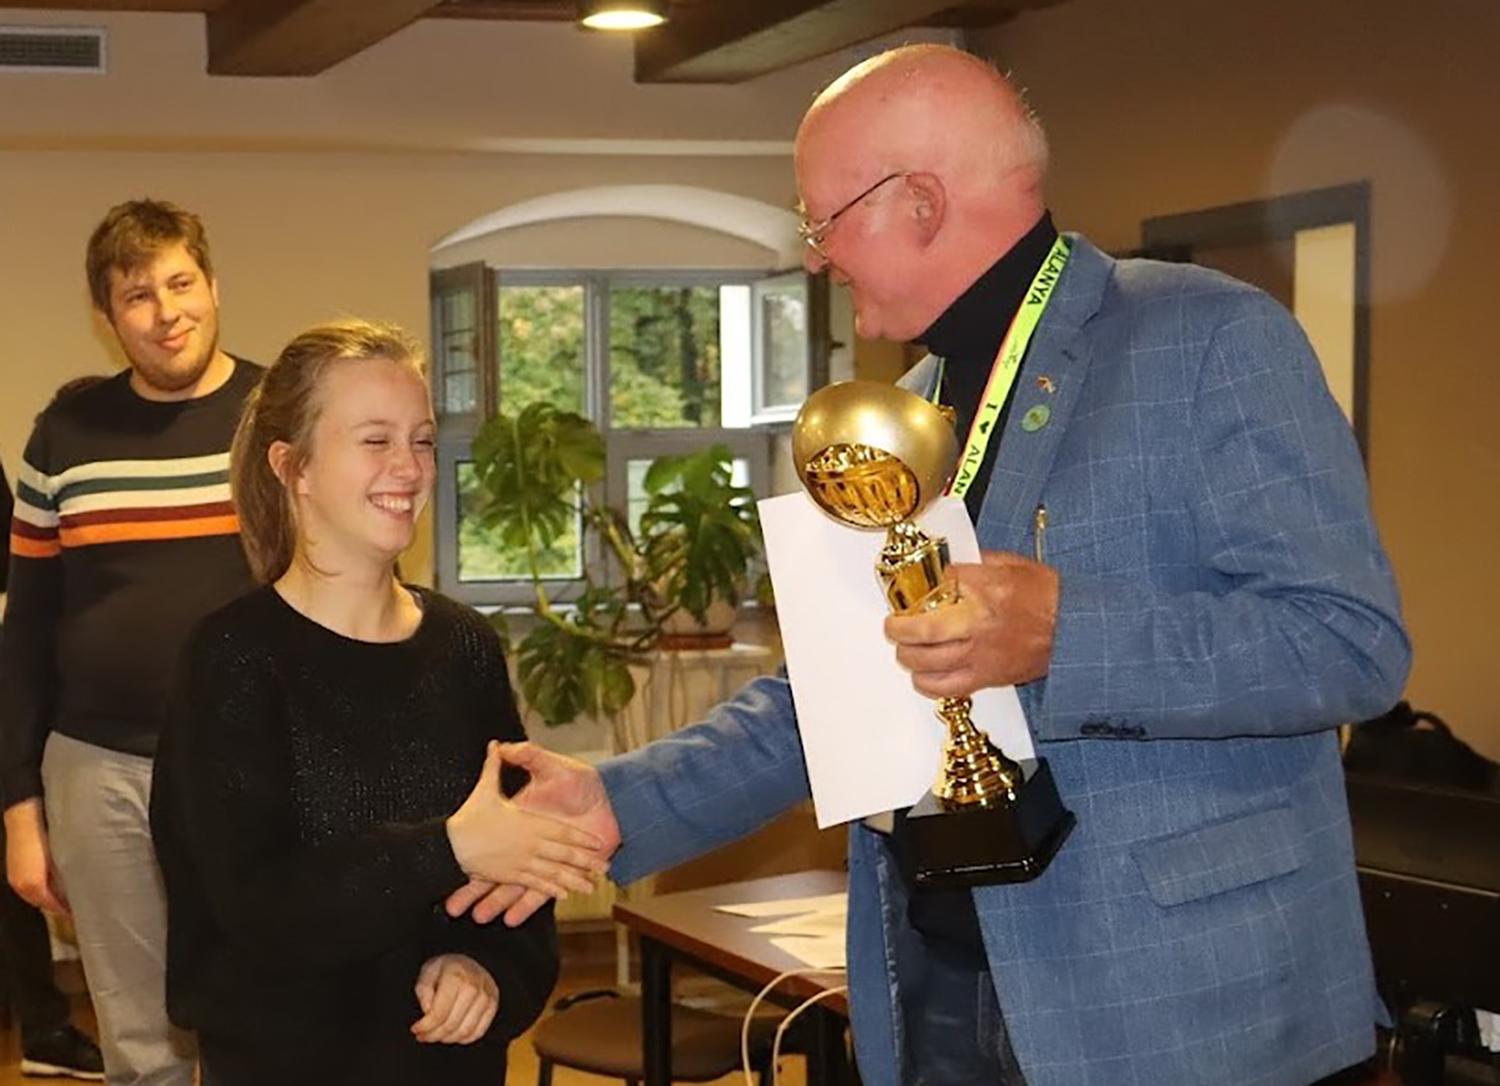 Lietuvos garbę gins Pasaulio šachmatų čempionate / Agnė Mickūnaitė atsiima dar vieną prizą.